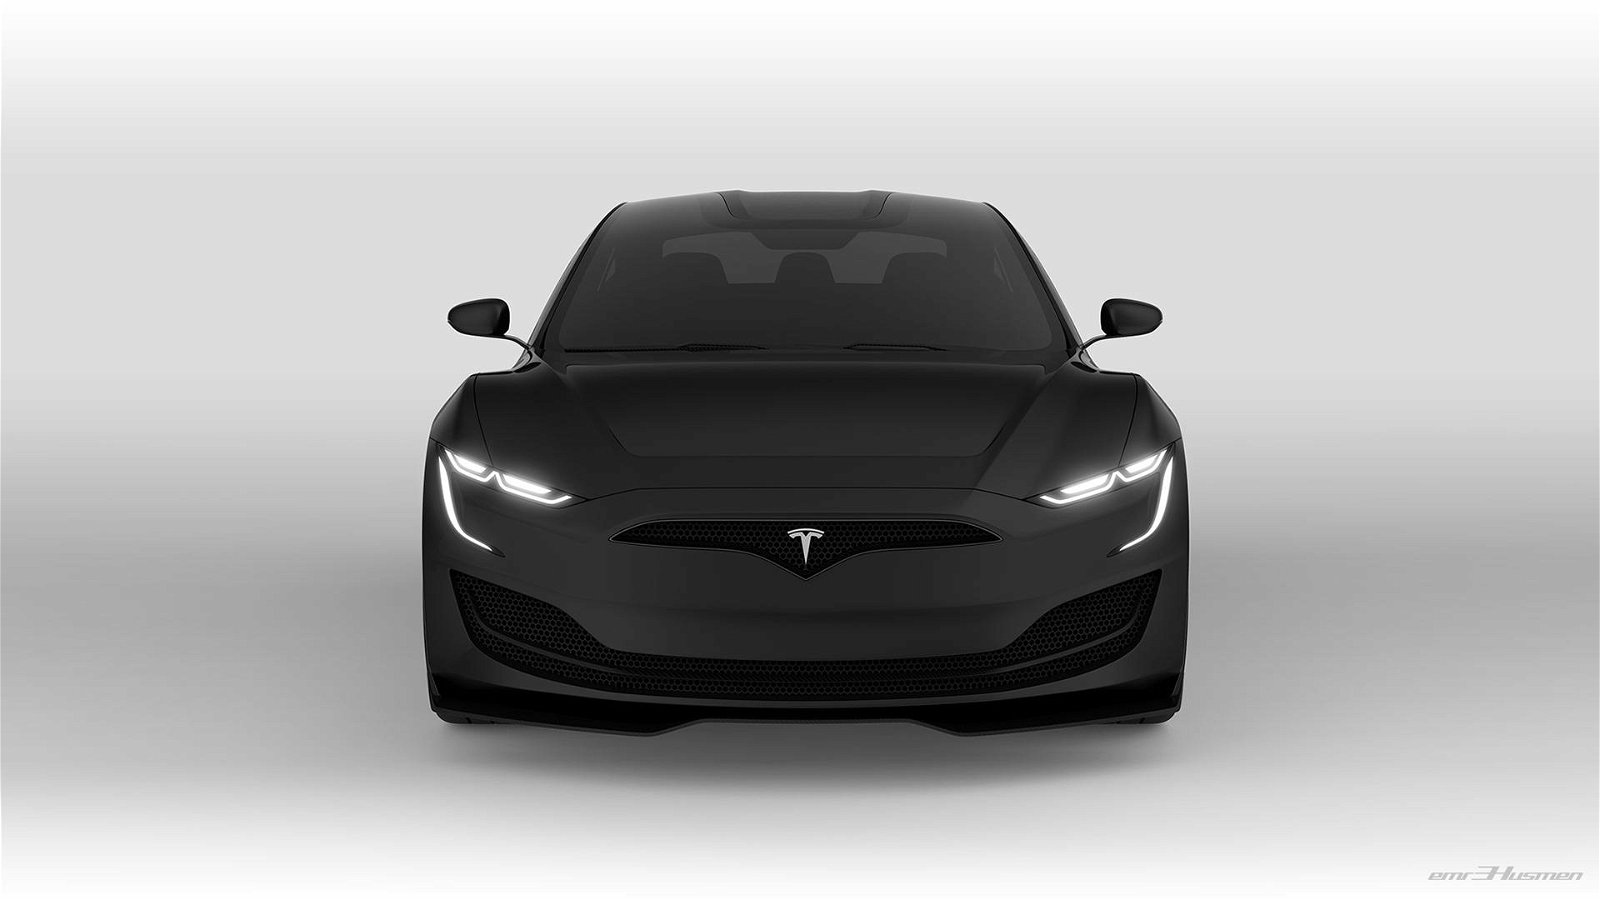 Next-generation-Tesla-Model-S-by-Emre-Husmen-13